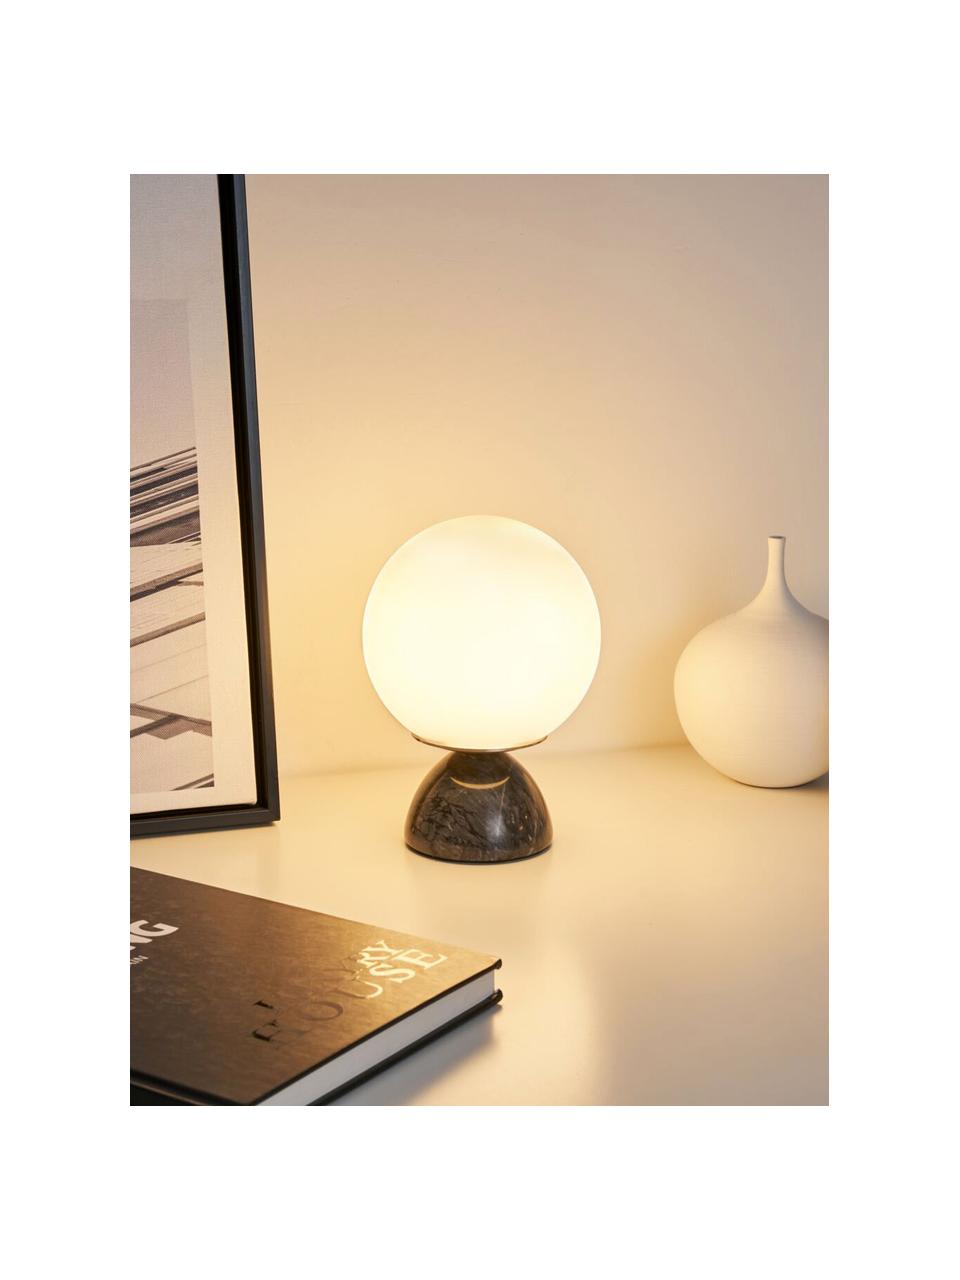 Lámpara de mesa pequeña de mámol Shining Pearl, Pantalla: vidrio, Cable: cubierto en tela, Negro, veteado, blanco, Ø 15 x Al 21 cm